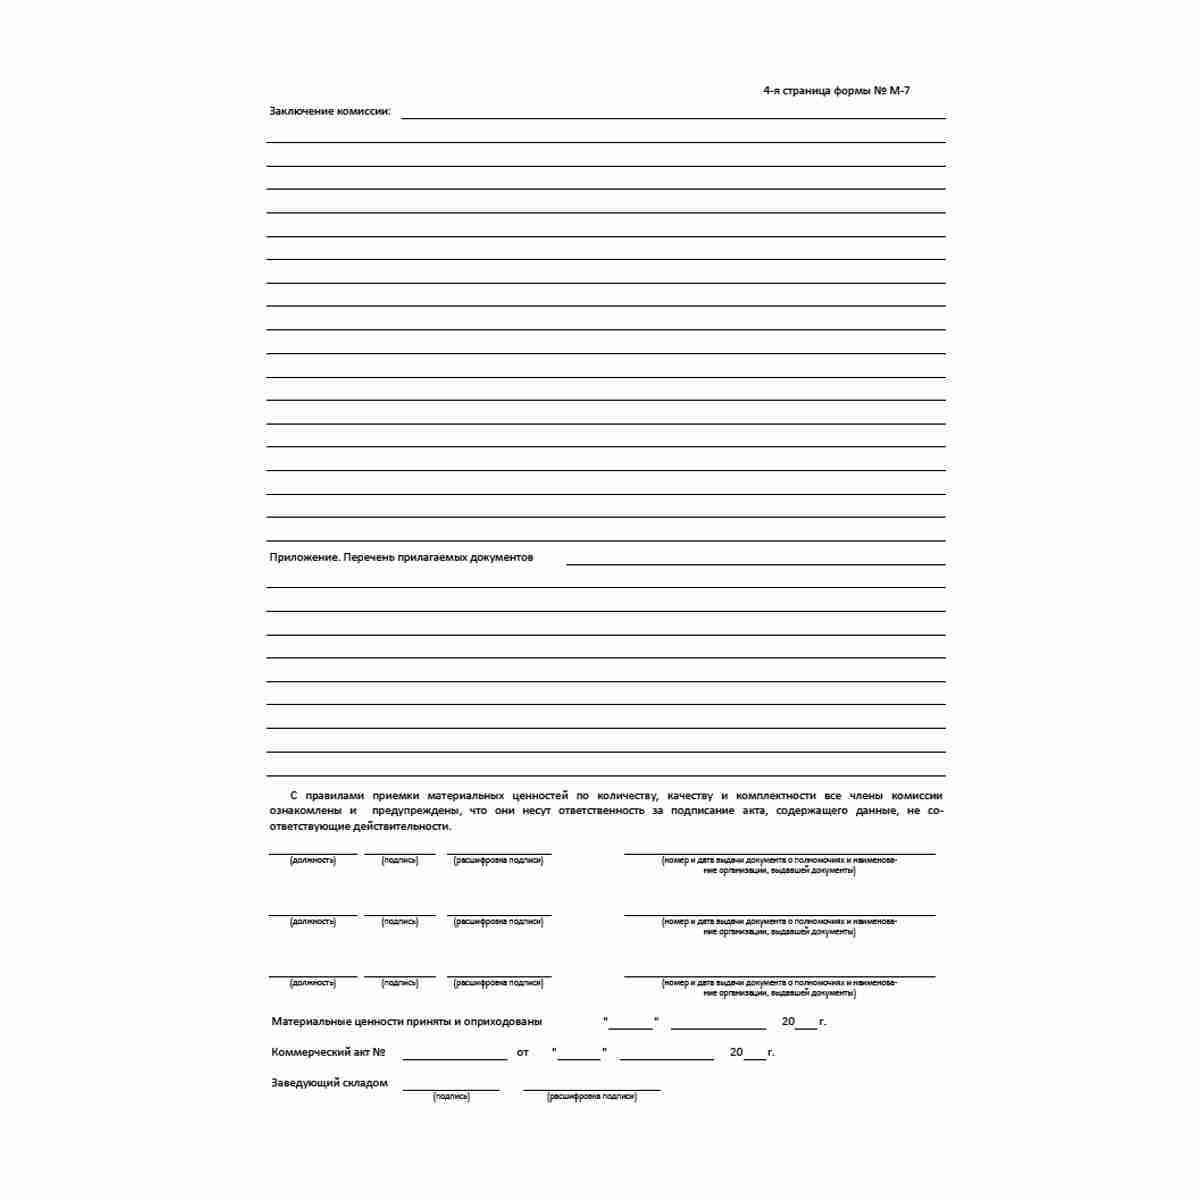 Унифицированная форма первичной учетной документации Типовая межотраслевая форма № М-7 "Акт о приемке материалов" (ОКУД 0315004). Стр. 4